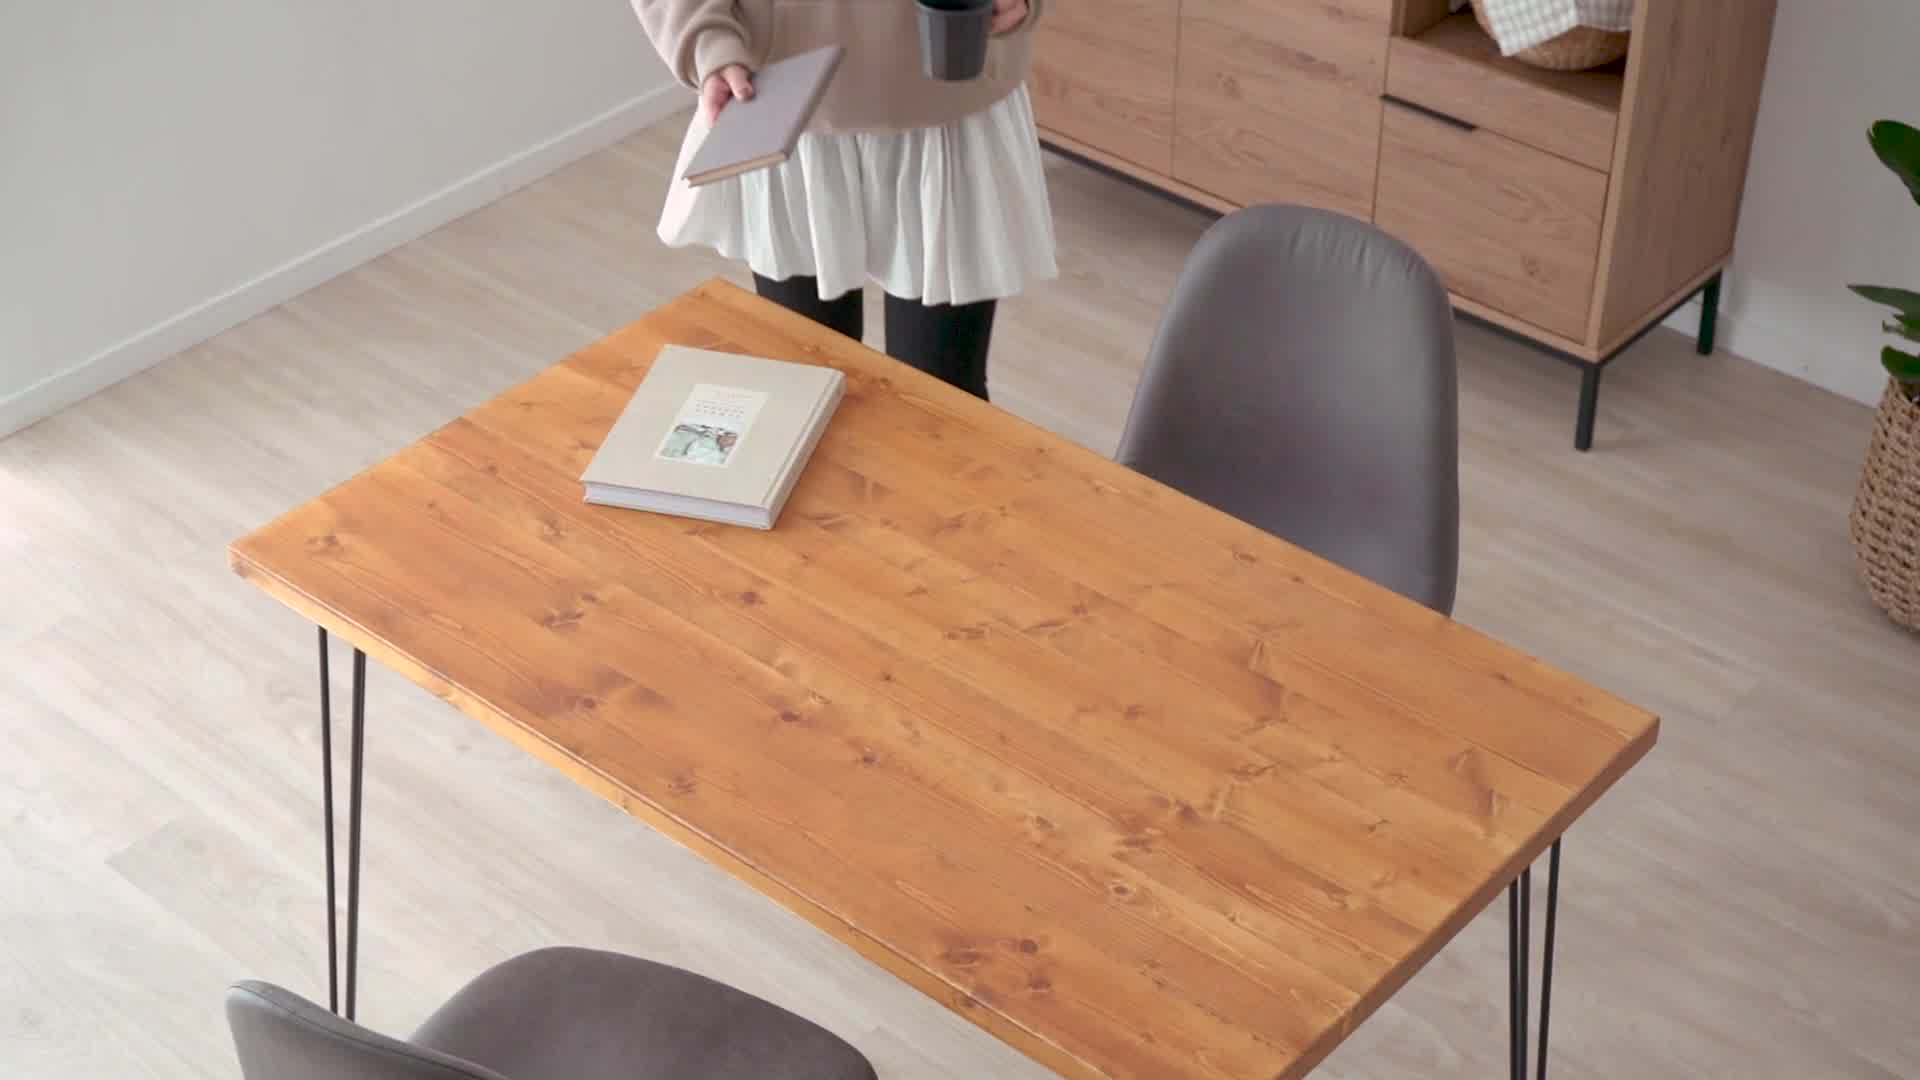 リビングテーブル ライトブラウン 無垢材 スチール脚のお洒落でシンプルデザイン 公式 Lowya ロウヤ 家具 インテリアのオンライン通販